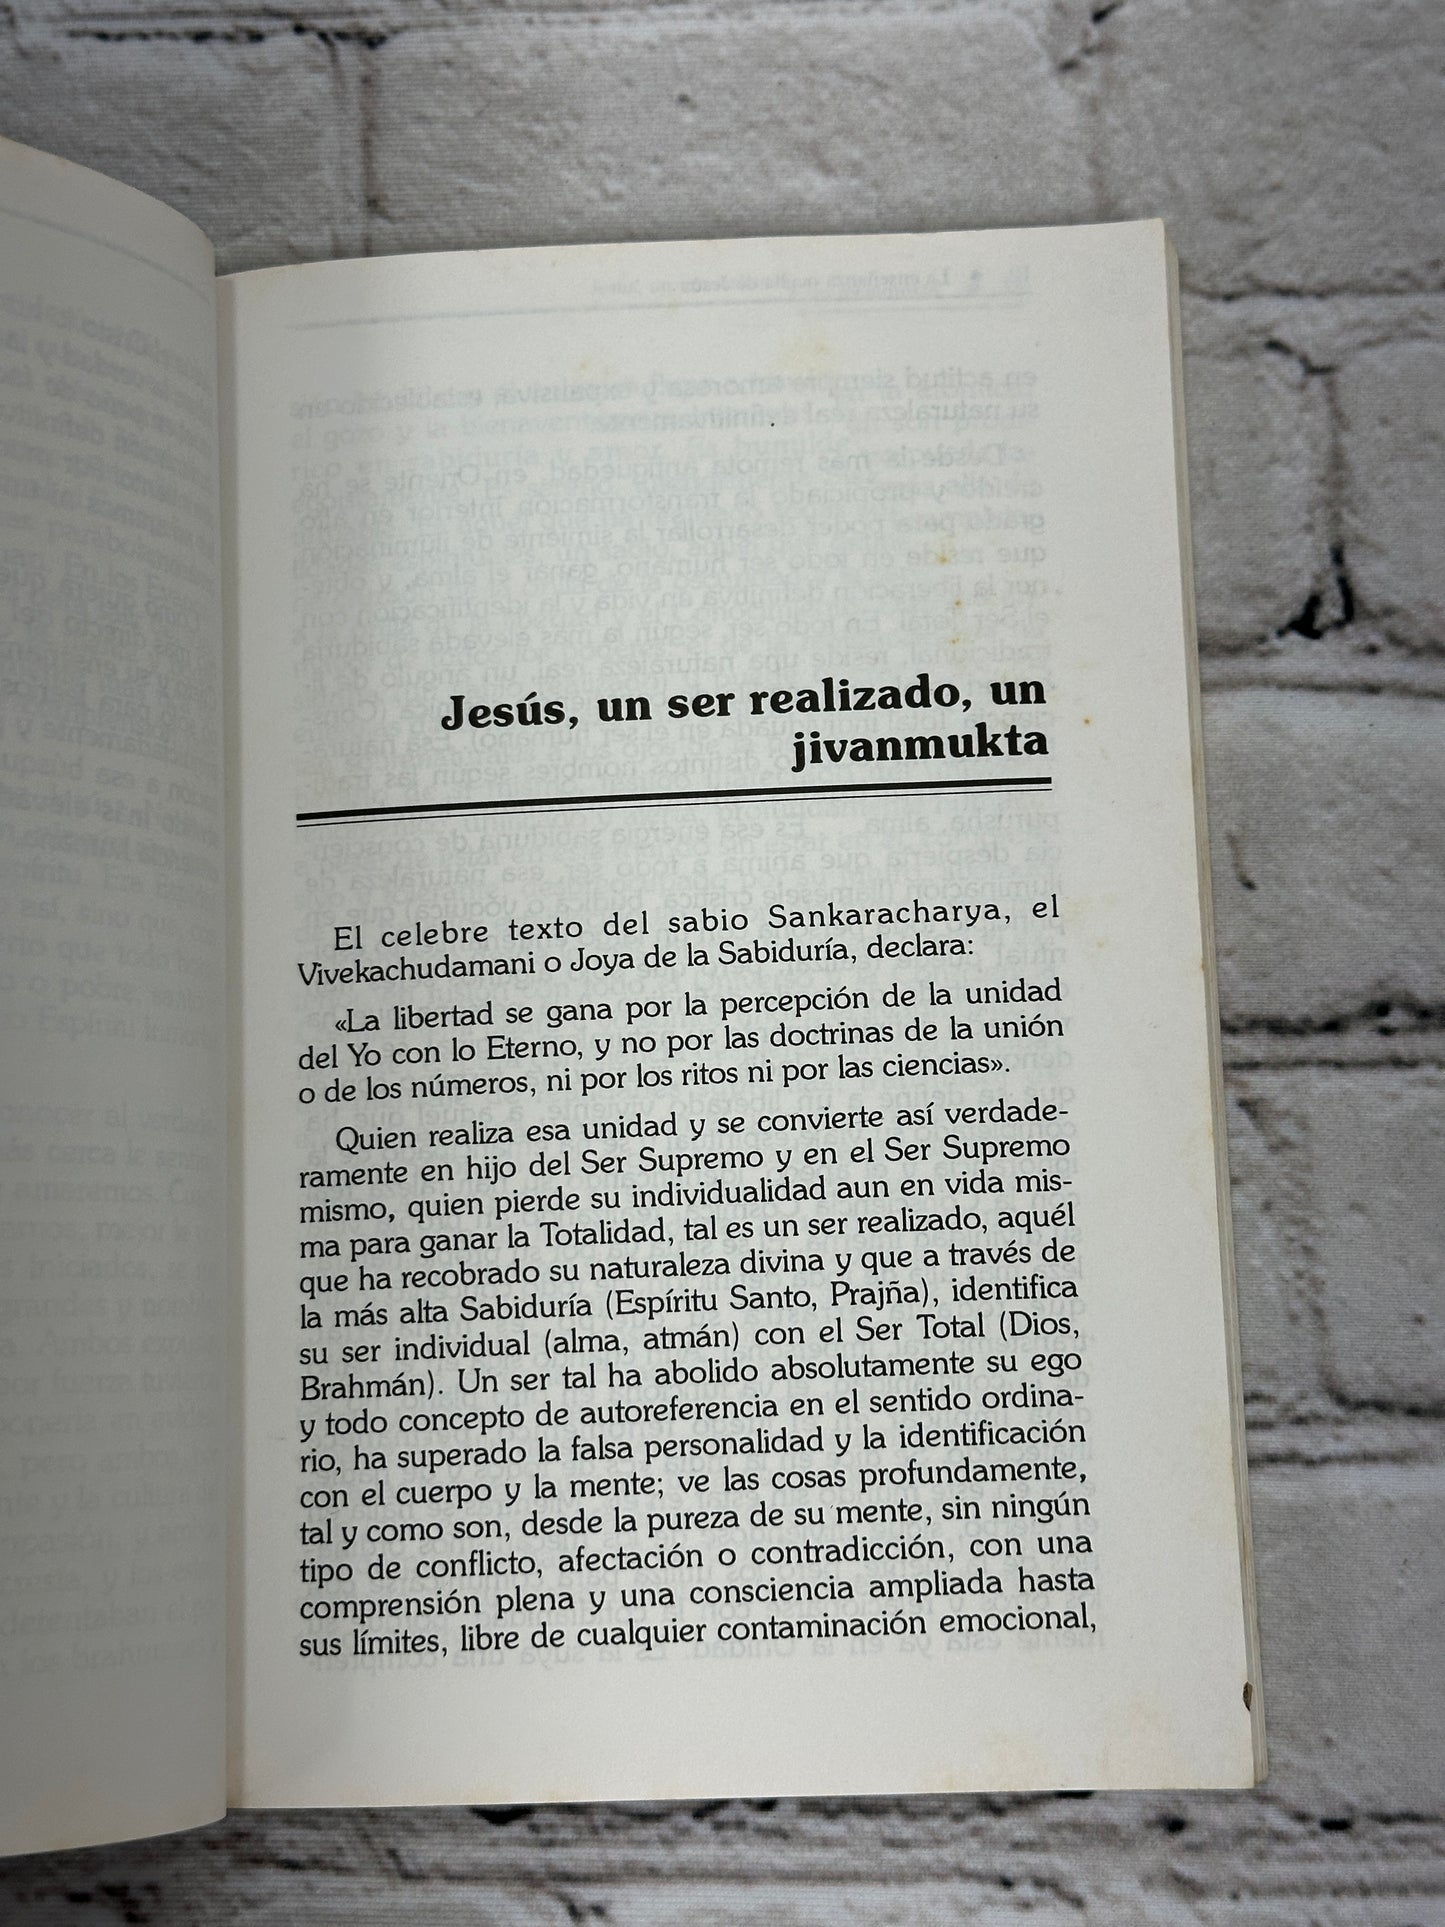 La Ensenanza Oculta de Jesus By Ramiro A. Calle [2nd Edition · 2000]